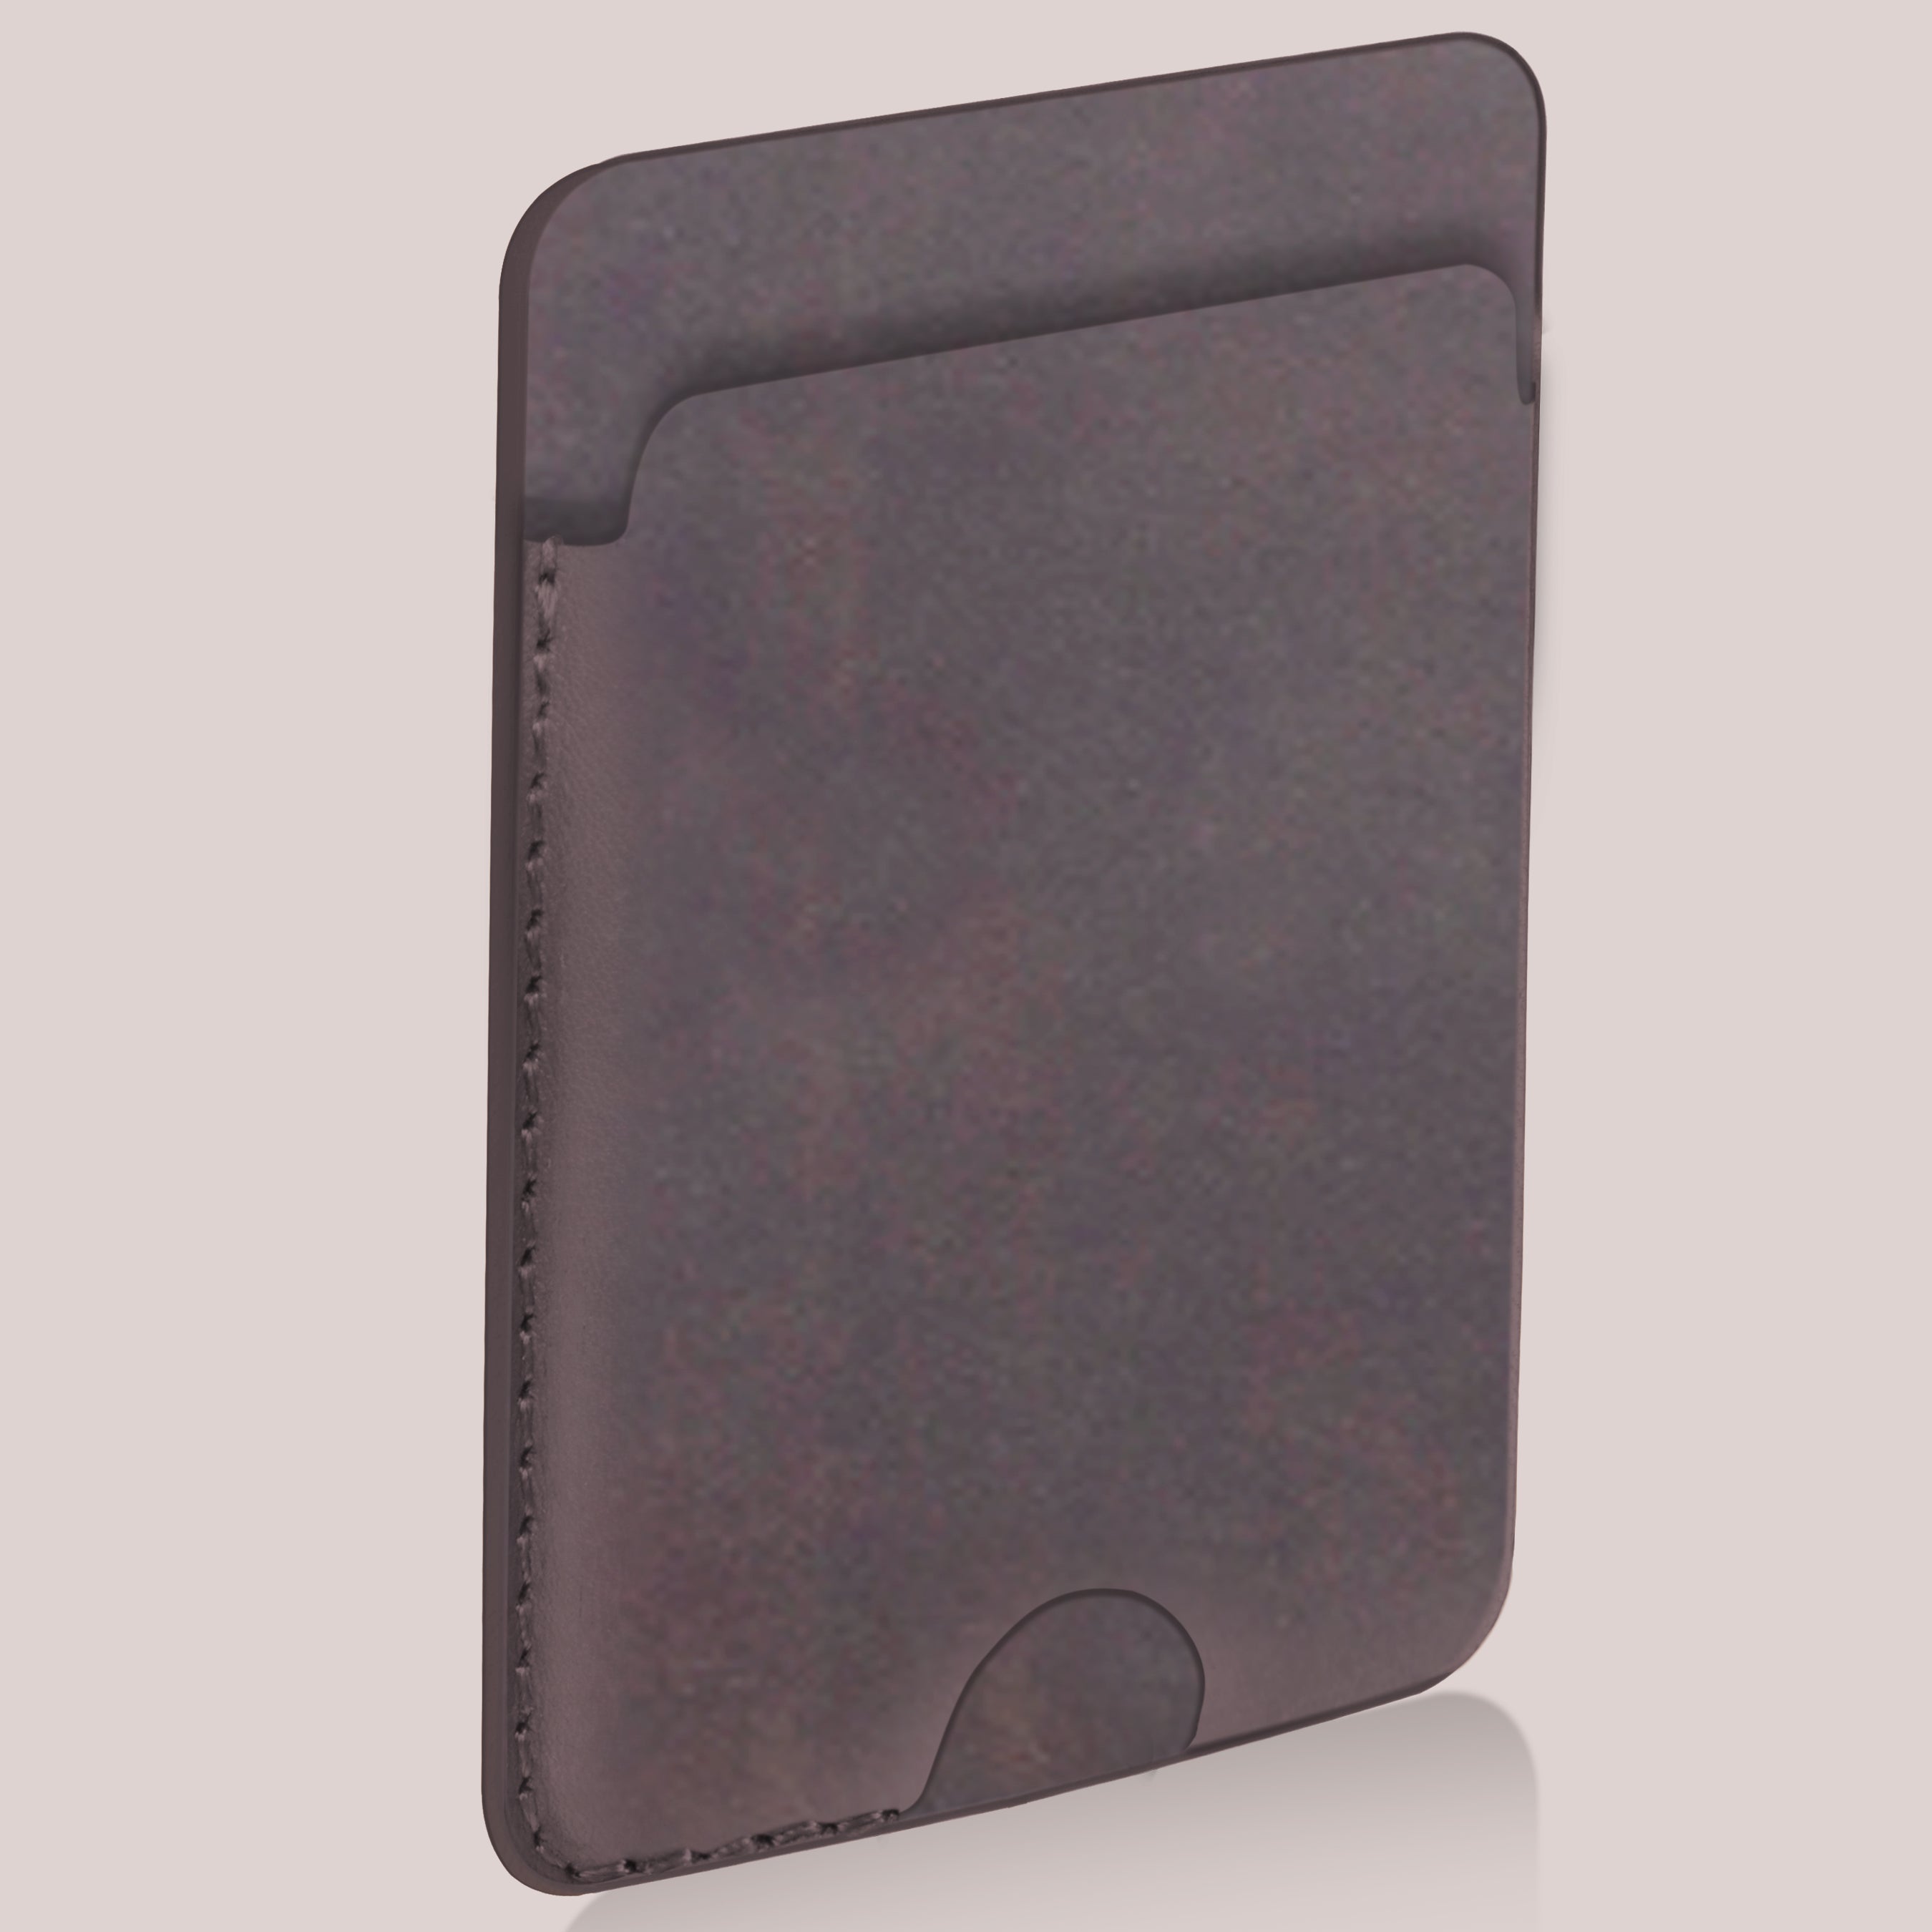 Magsafe wallet in grey color